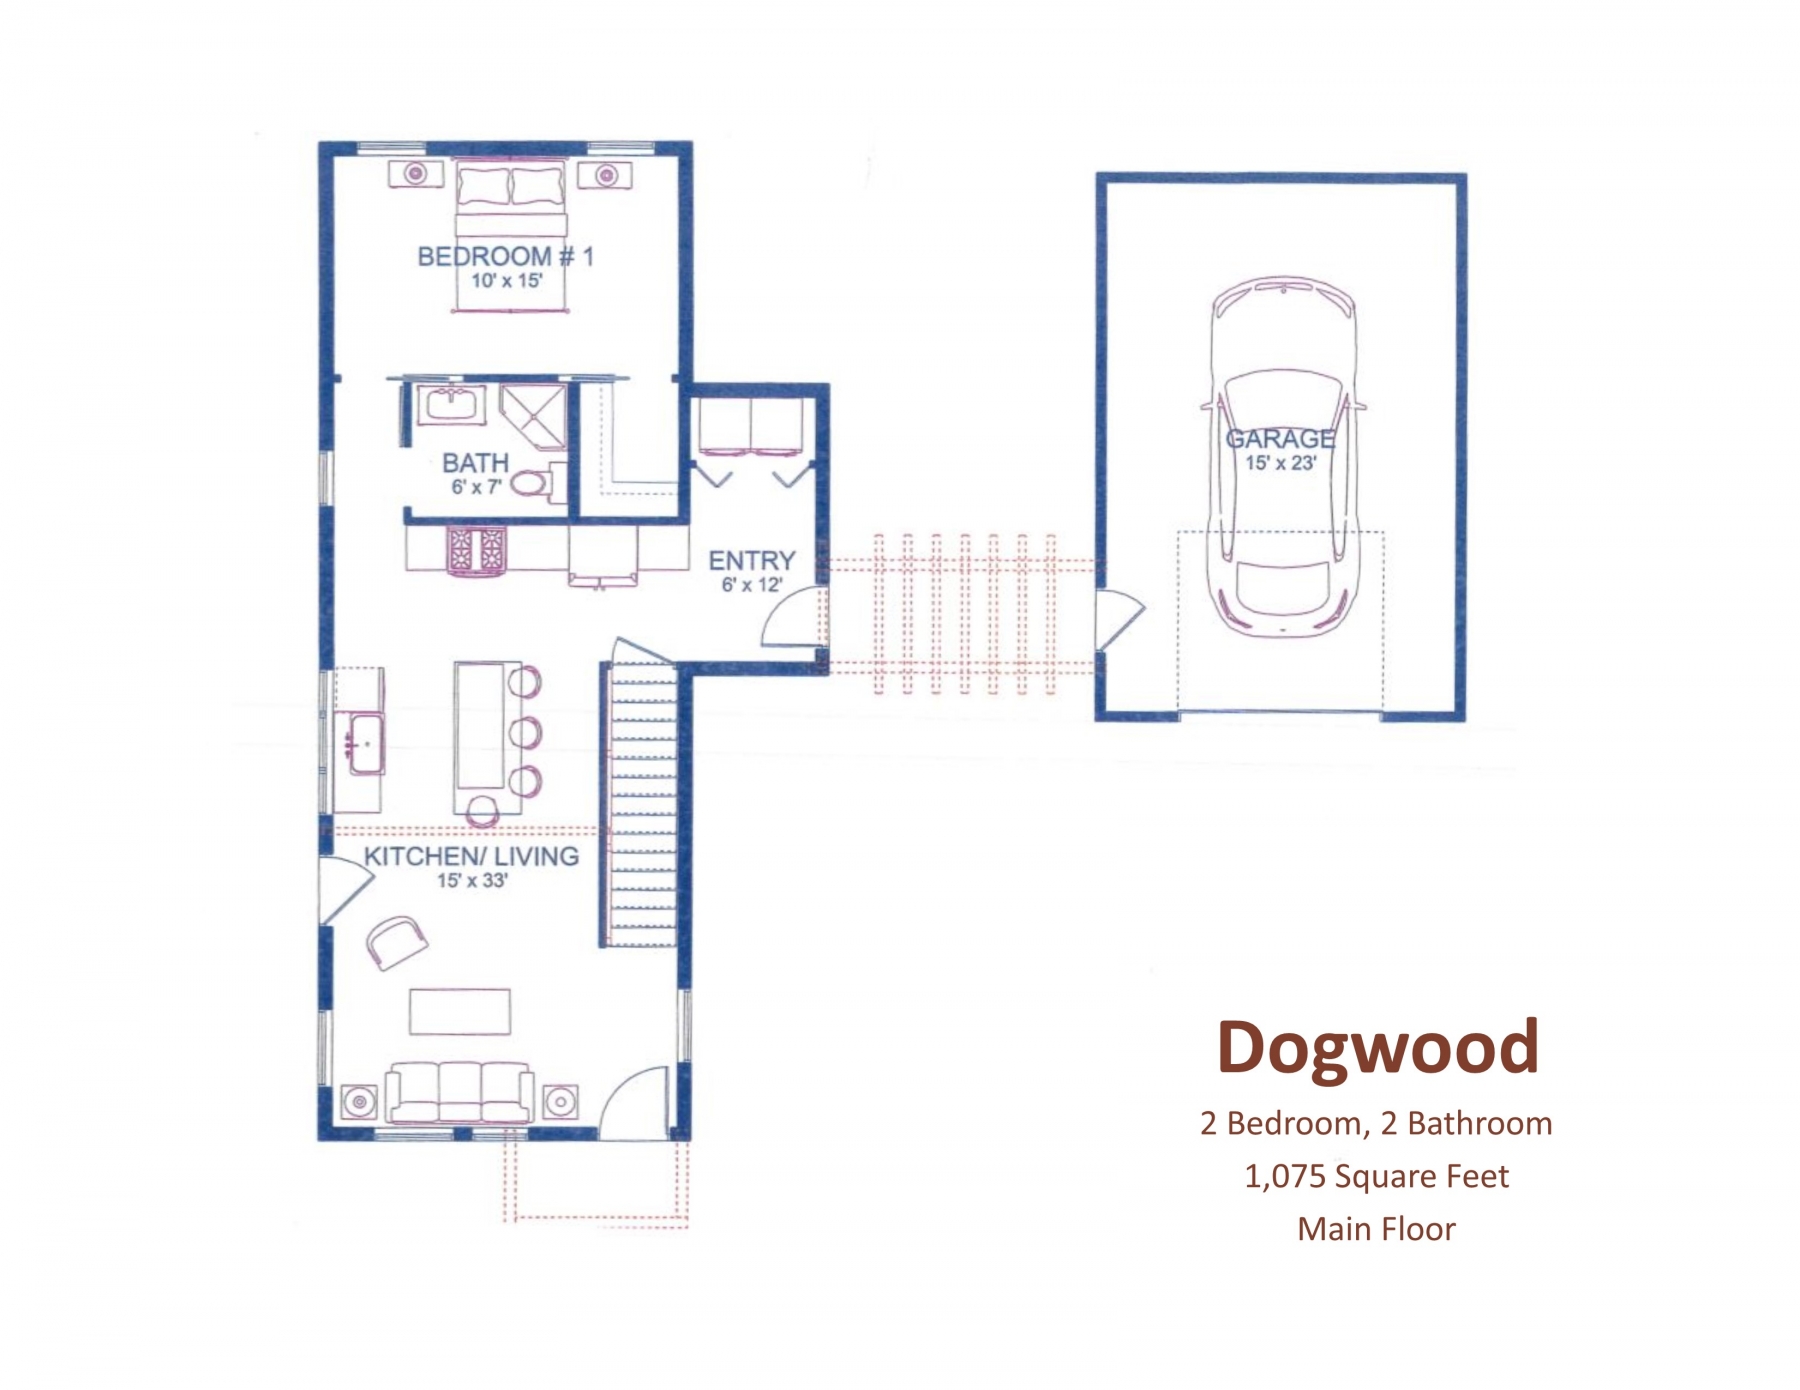 Dogwood Main Floor